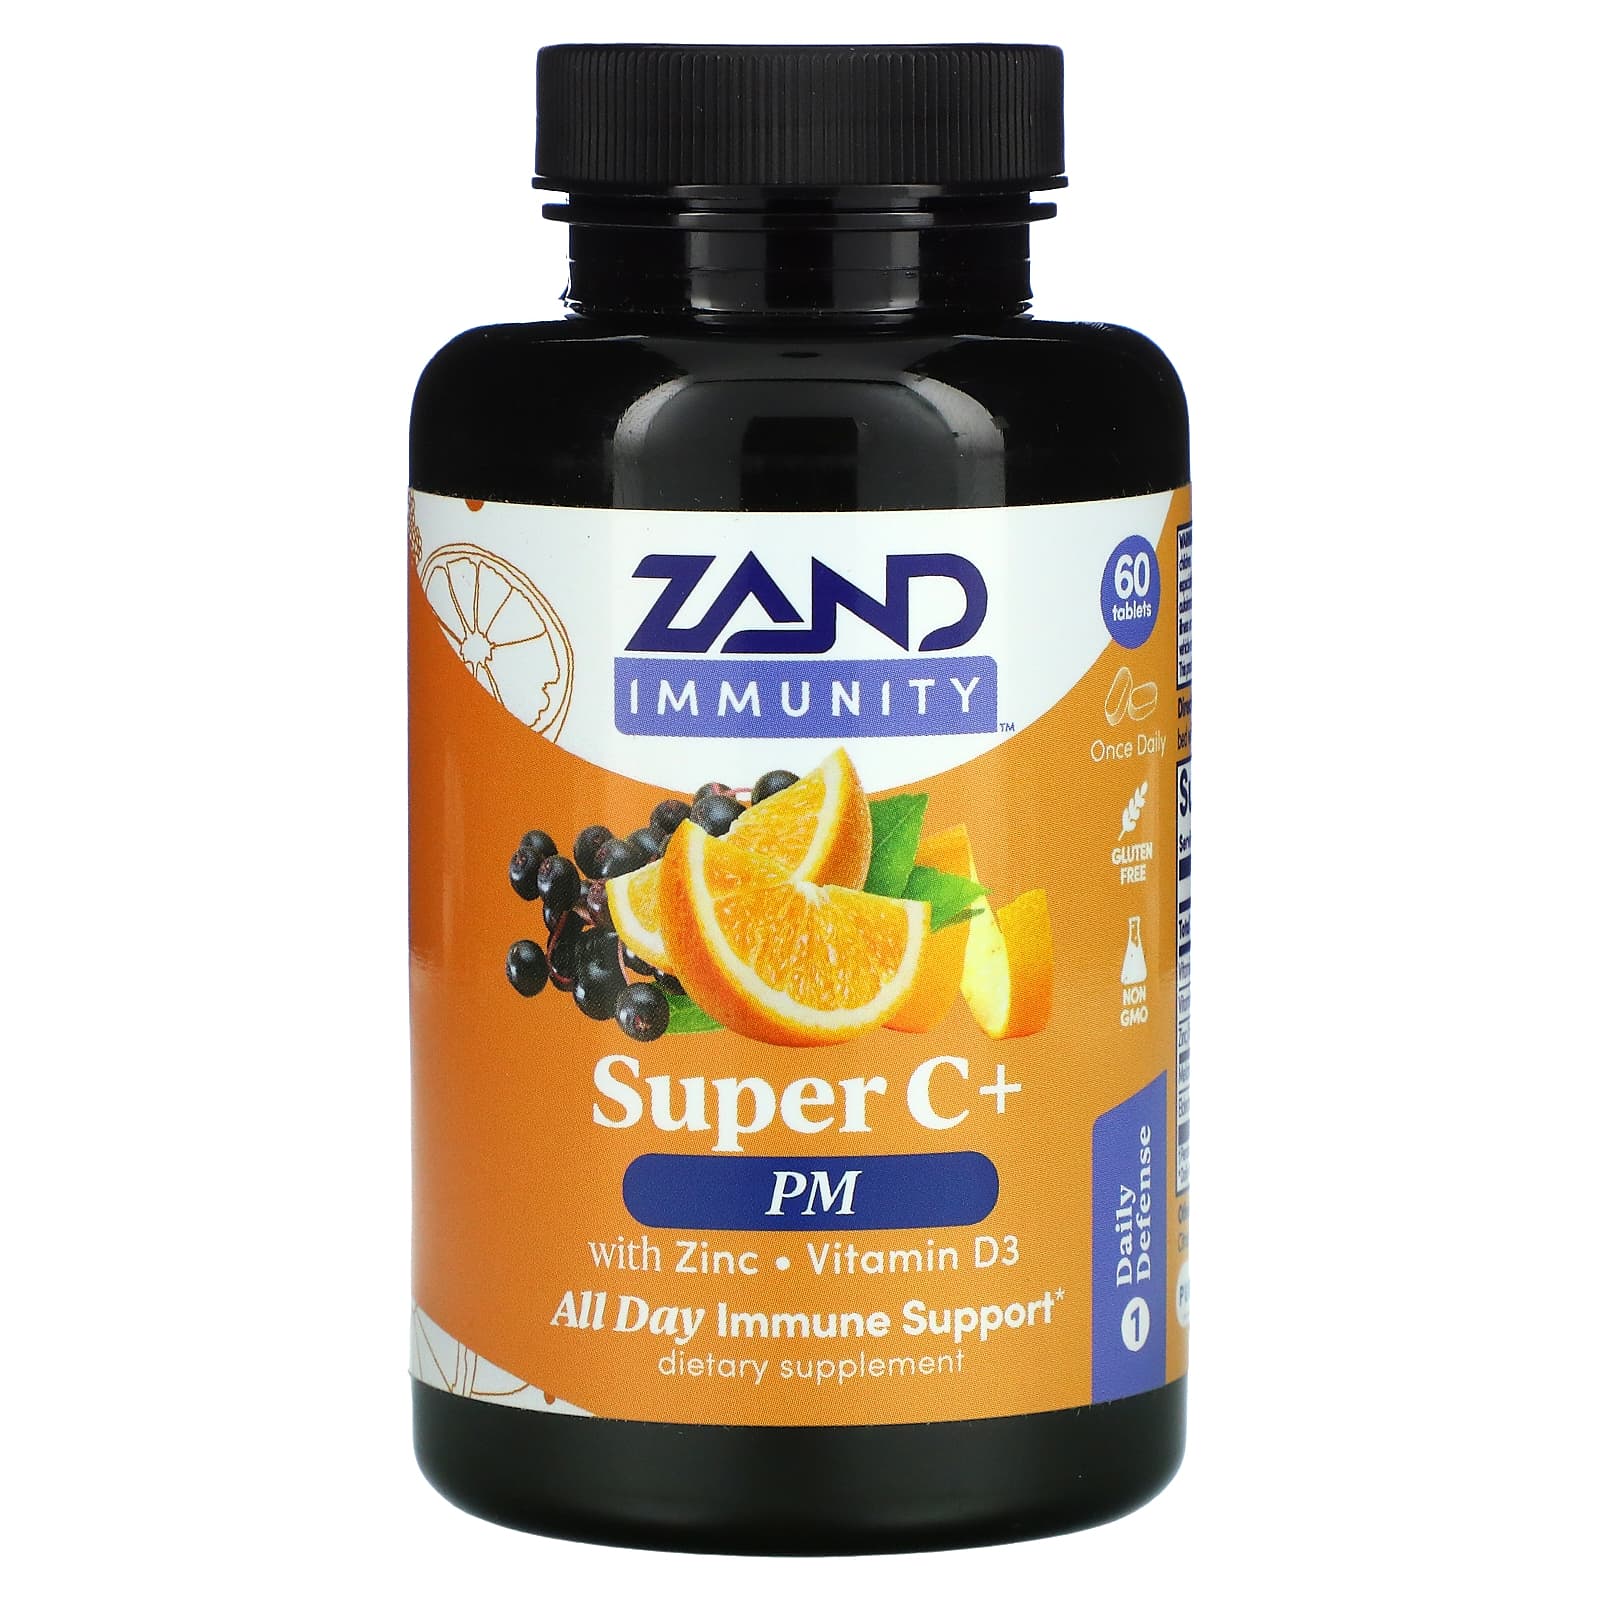 Пищевая Добавка Zand для иммунитета с цинком и витамином D3, 60 таблеток zand immunity super c бузина с цинком и витамином d3 60 таблеток